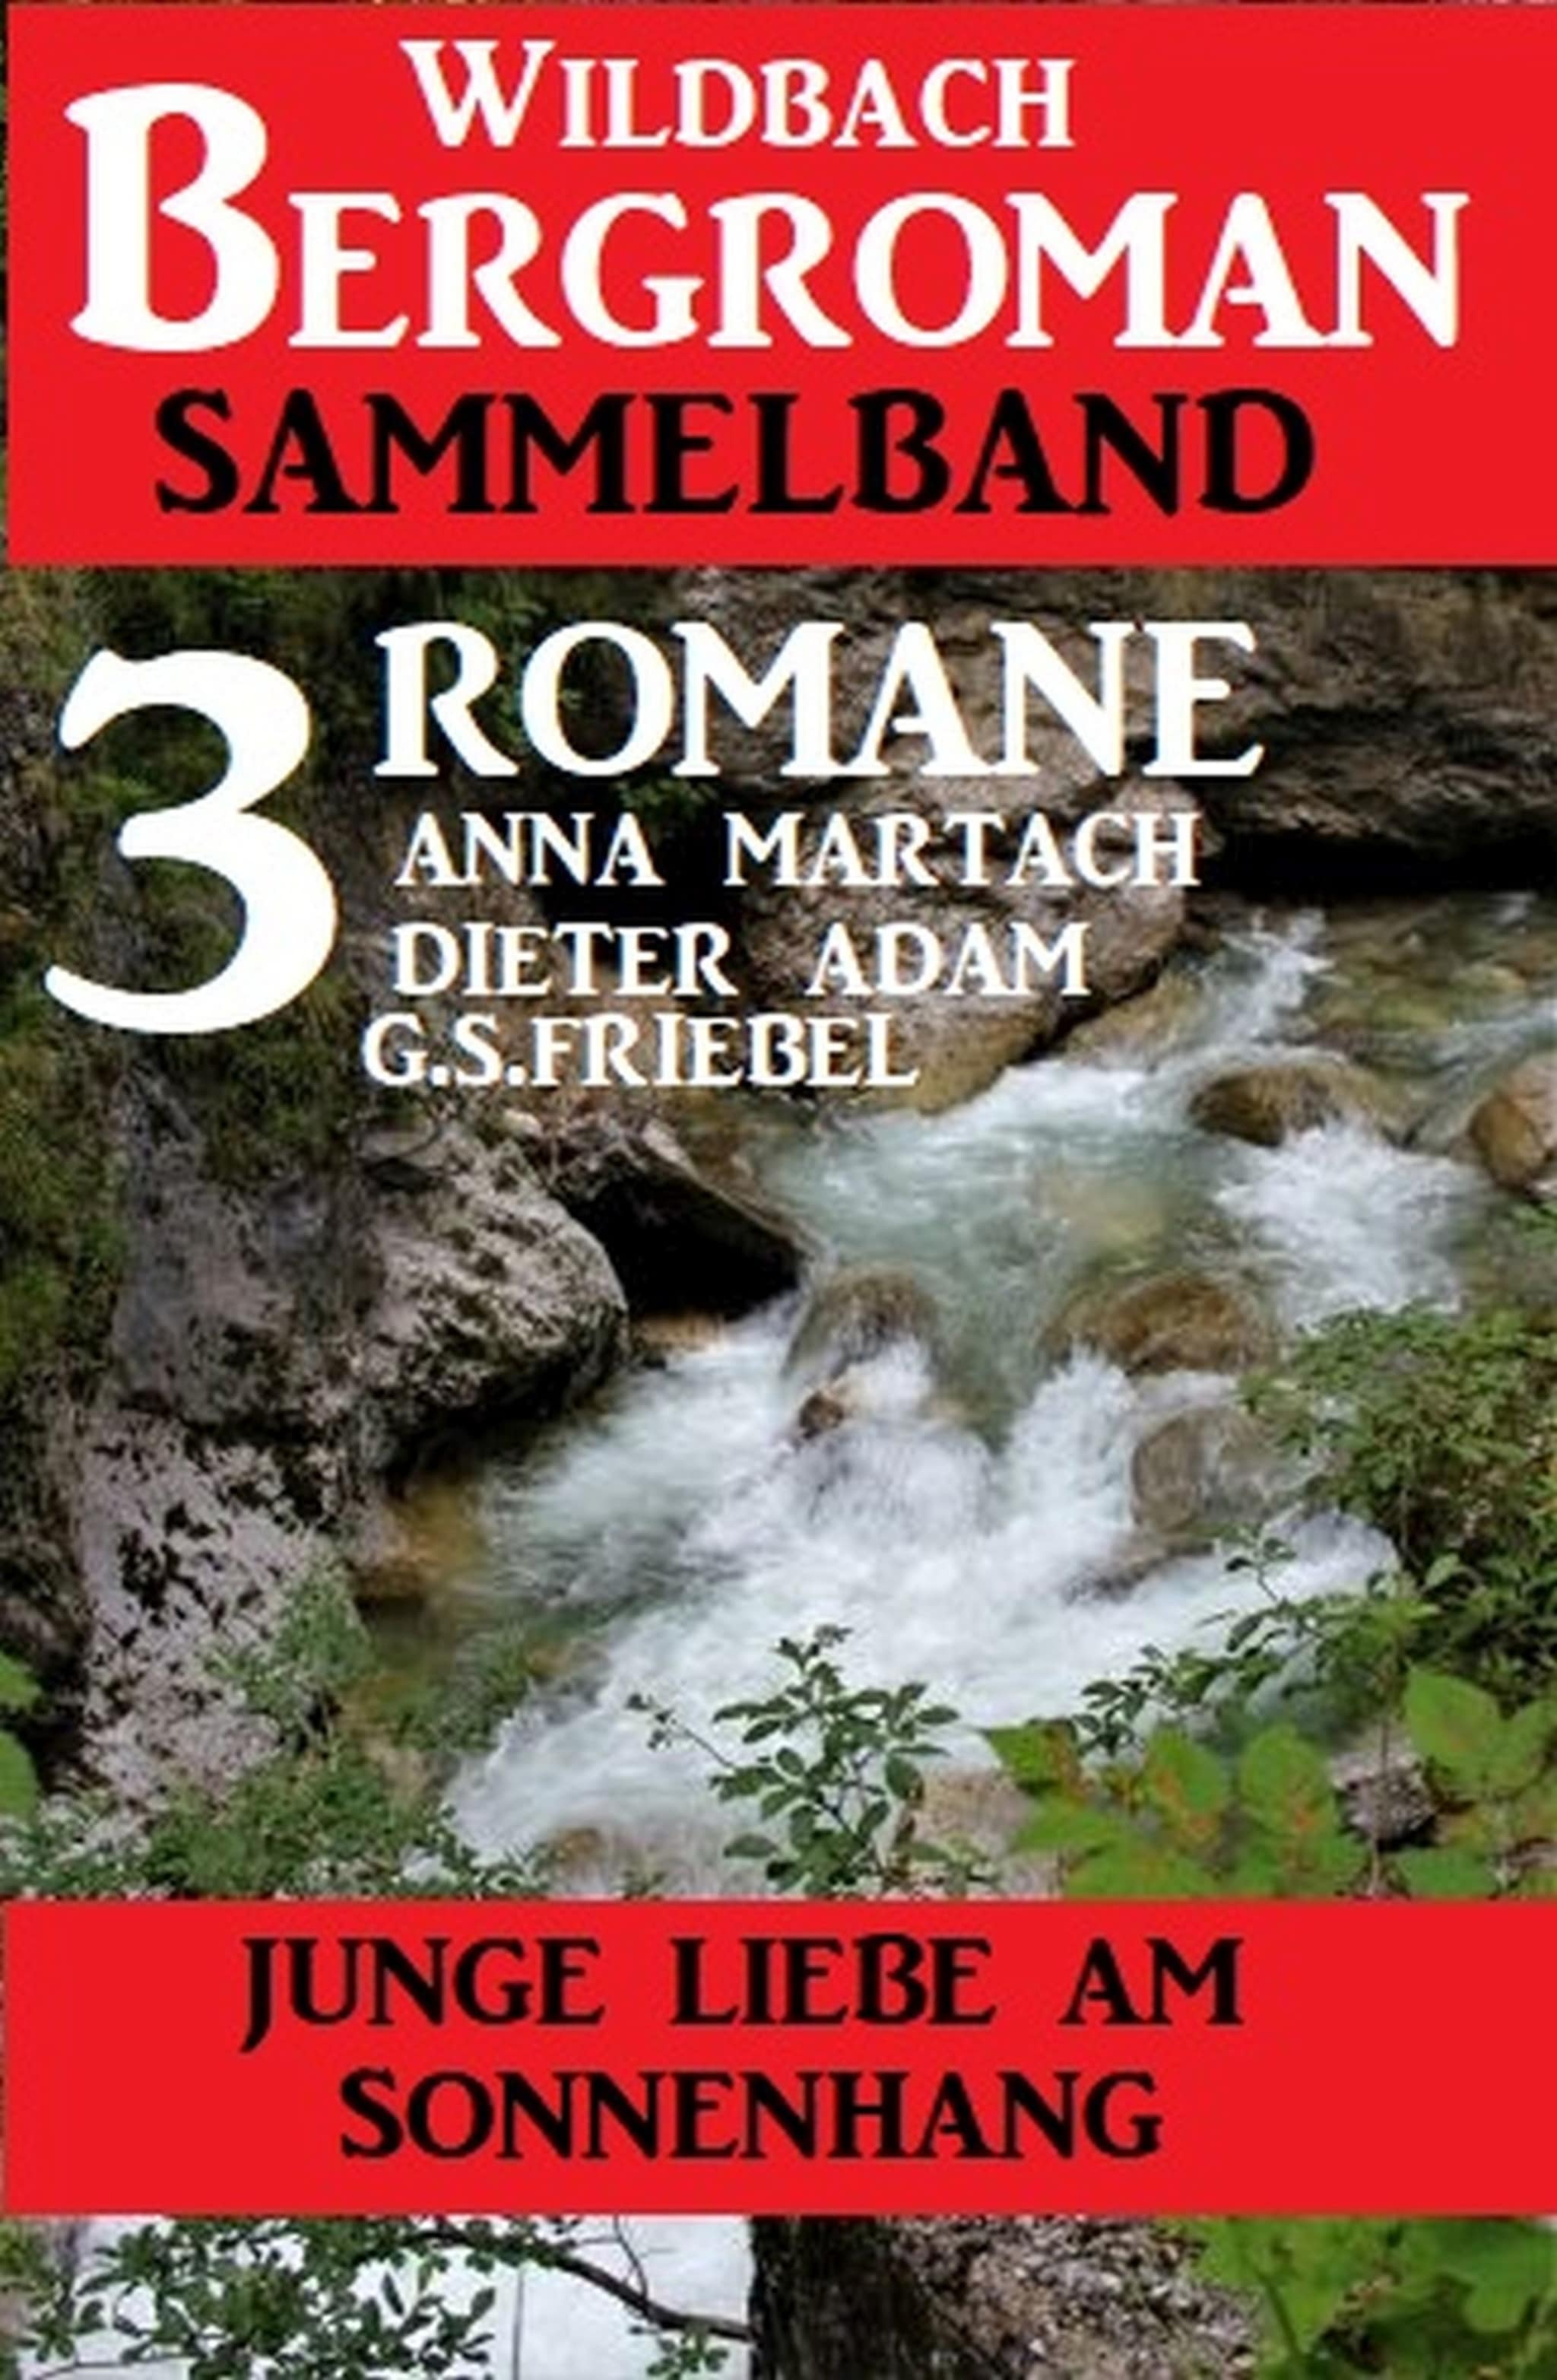 Junge Liebe am Sonnenhang: Wildbach Bergroman Sammelband 3 Romane ilmaiseksi